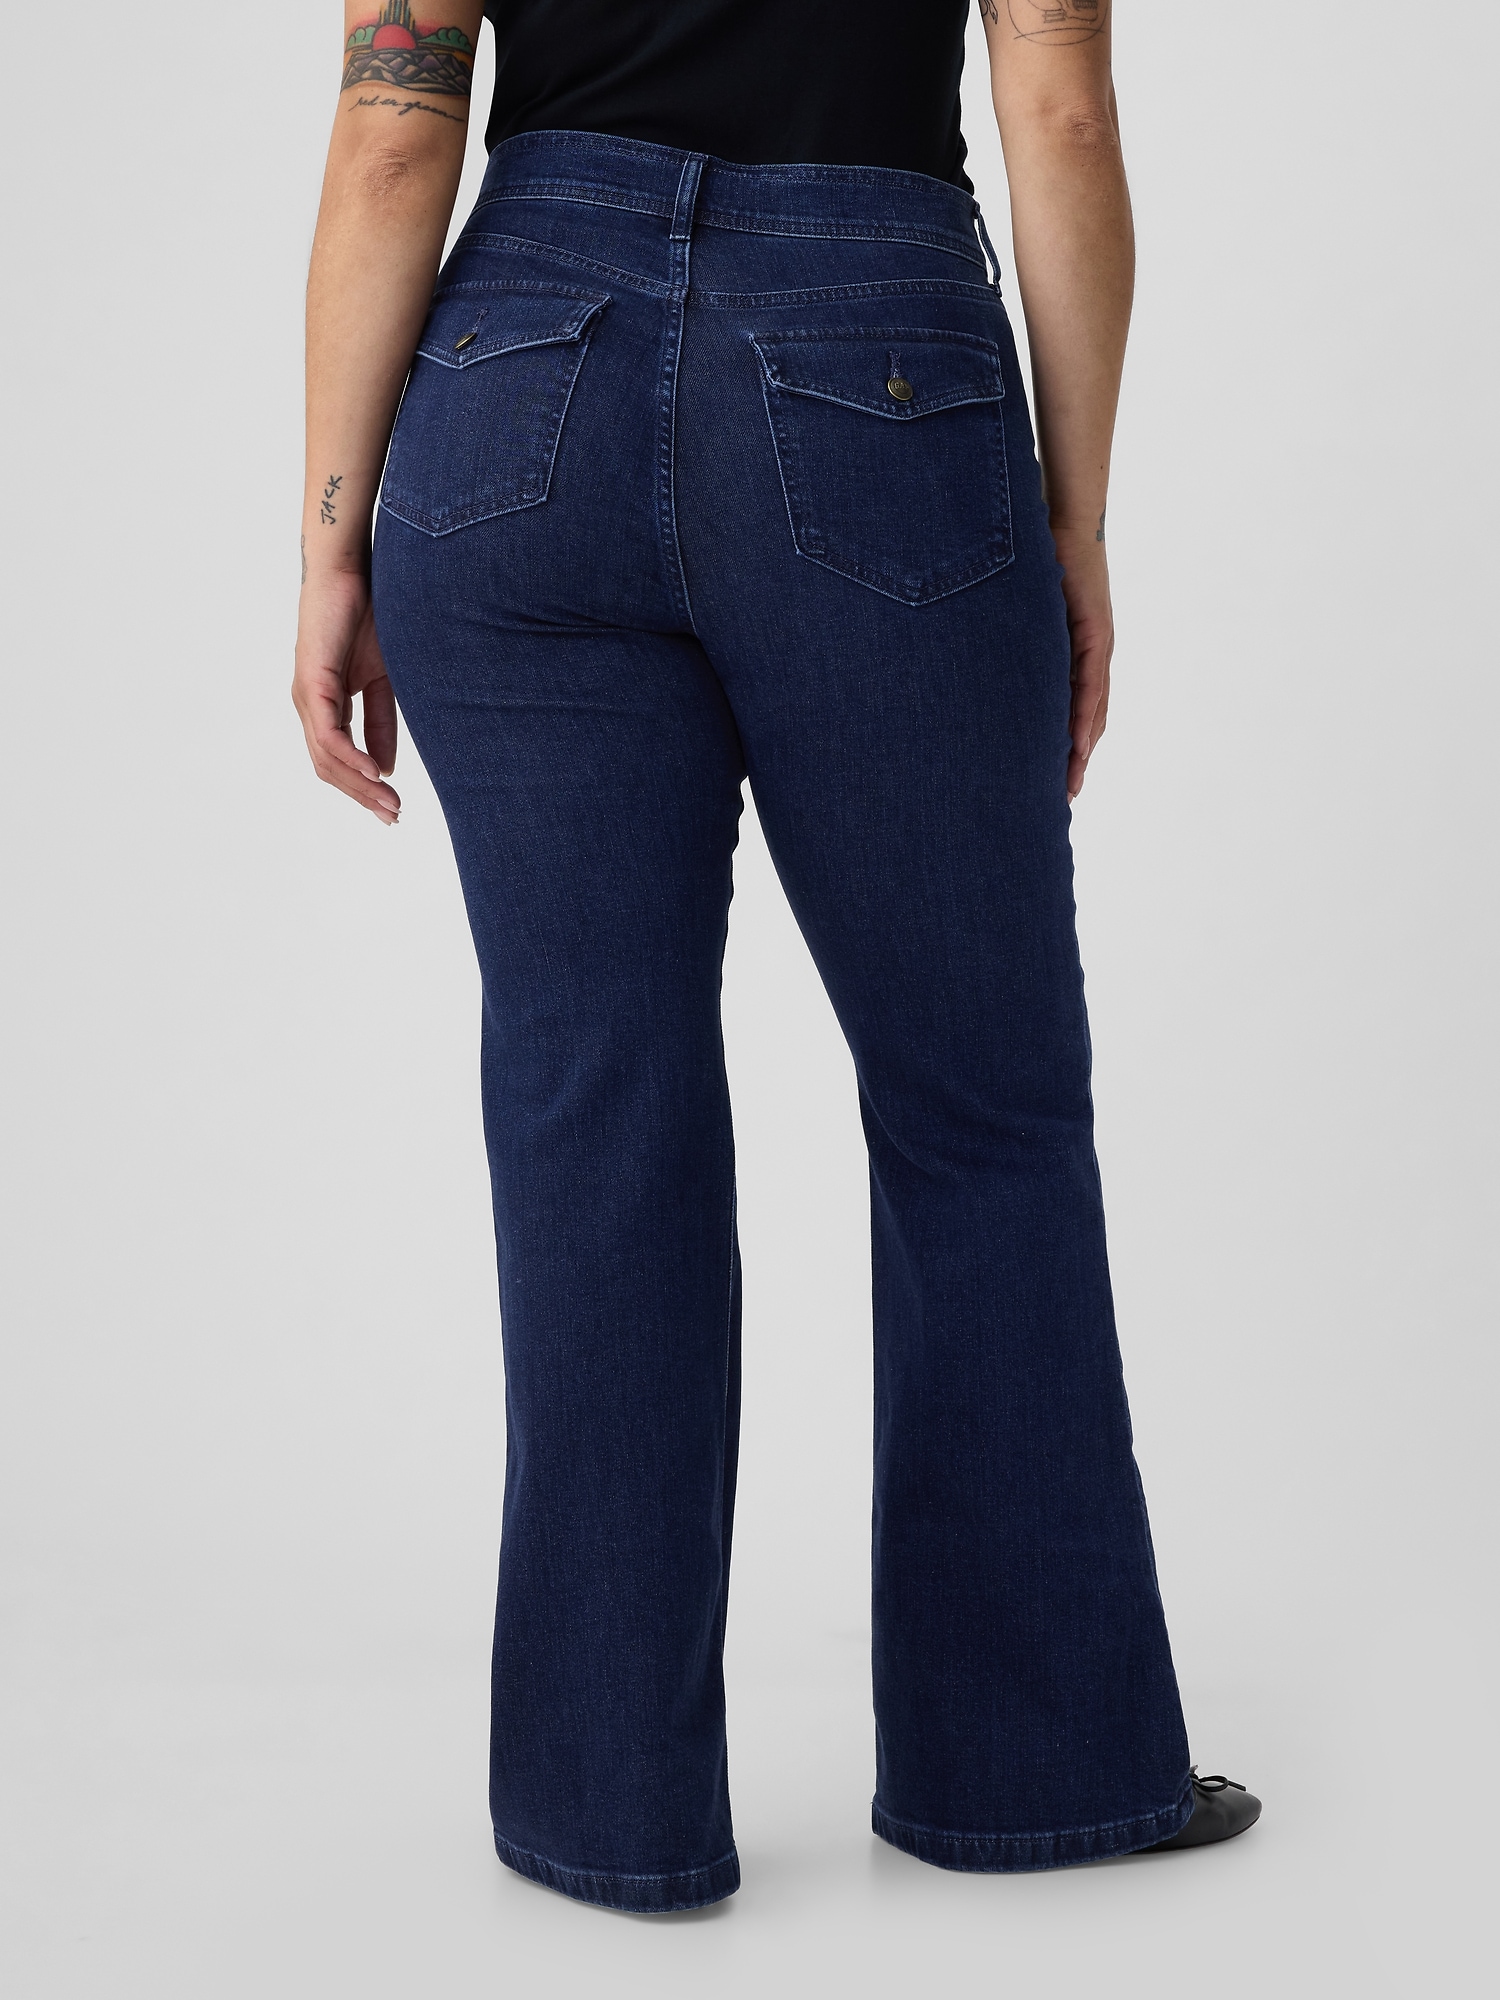 Hip! Women's & men's bell bottom jeans are back!